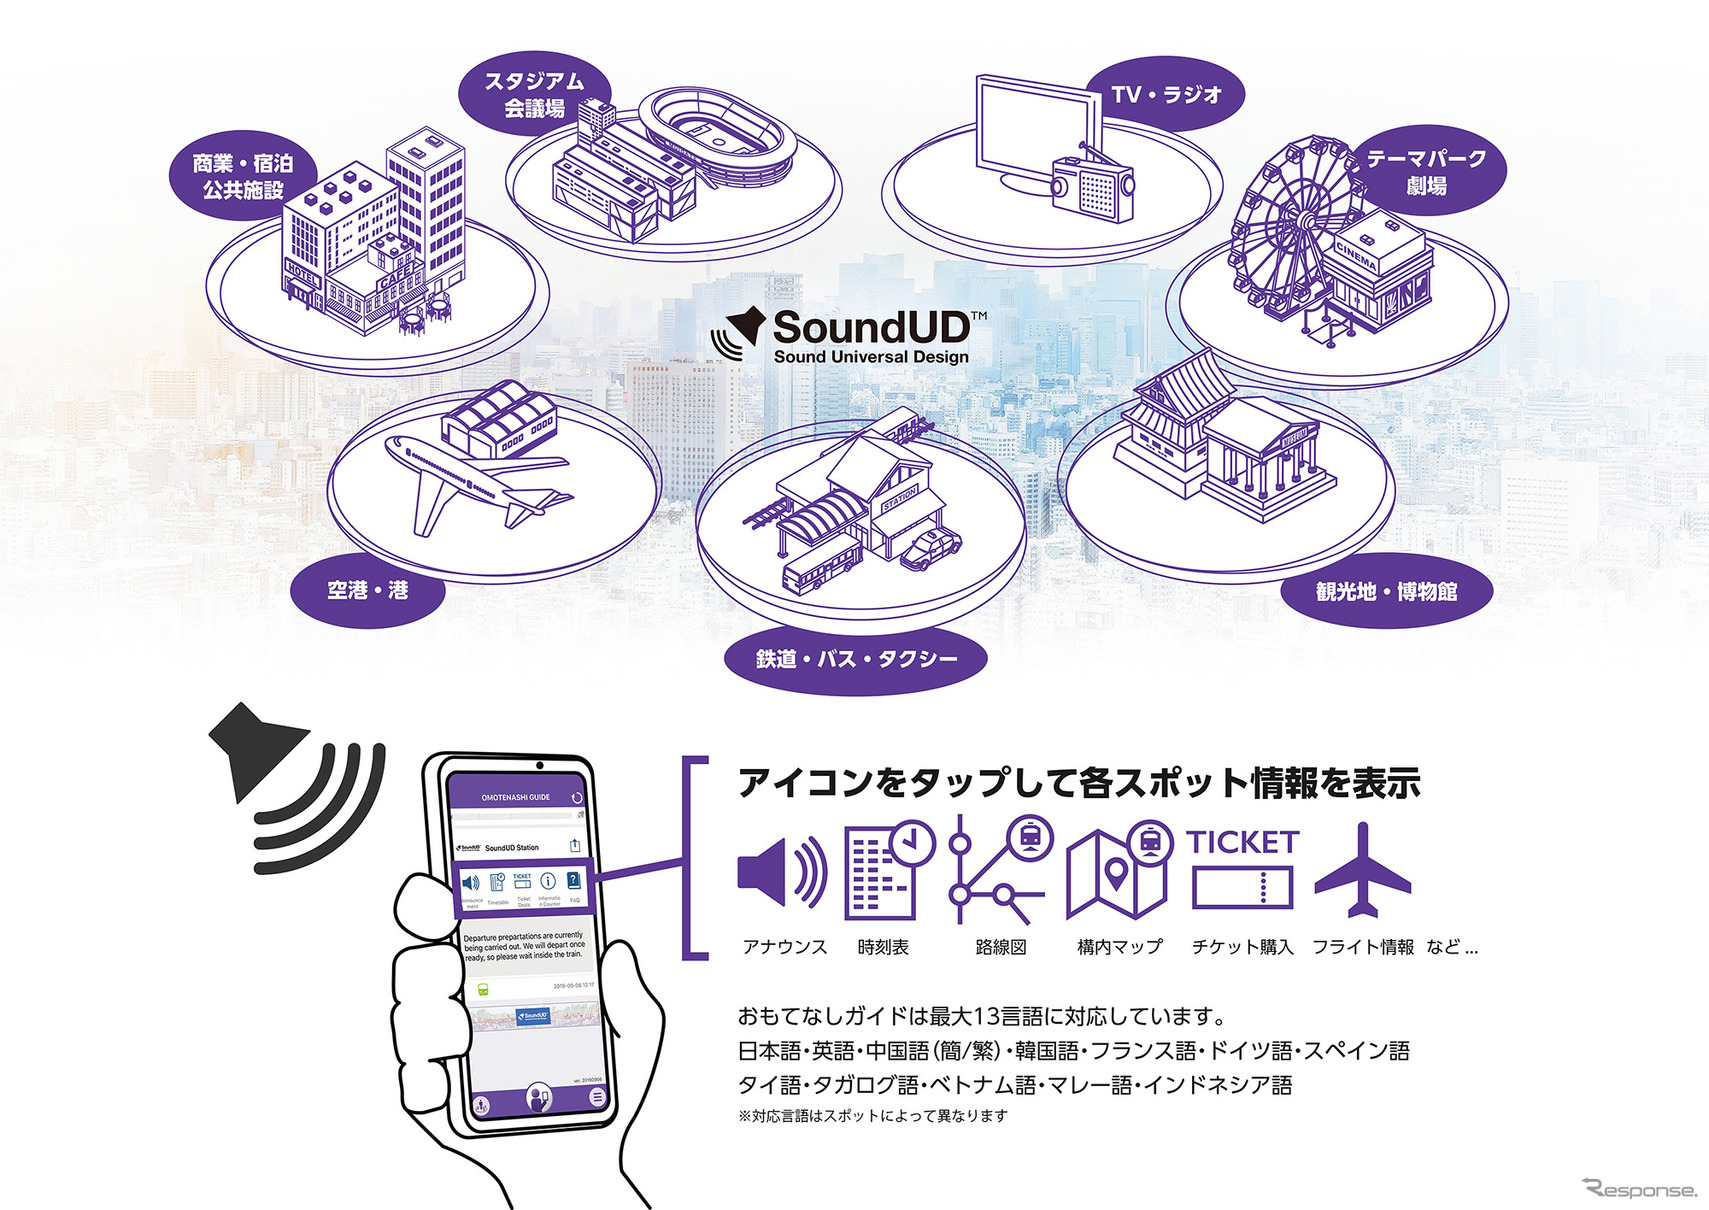 「SoundUD」を活用した多言語サービス